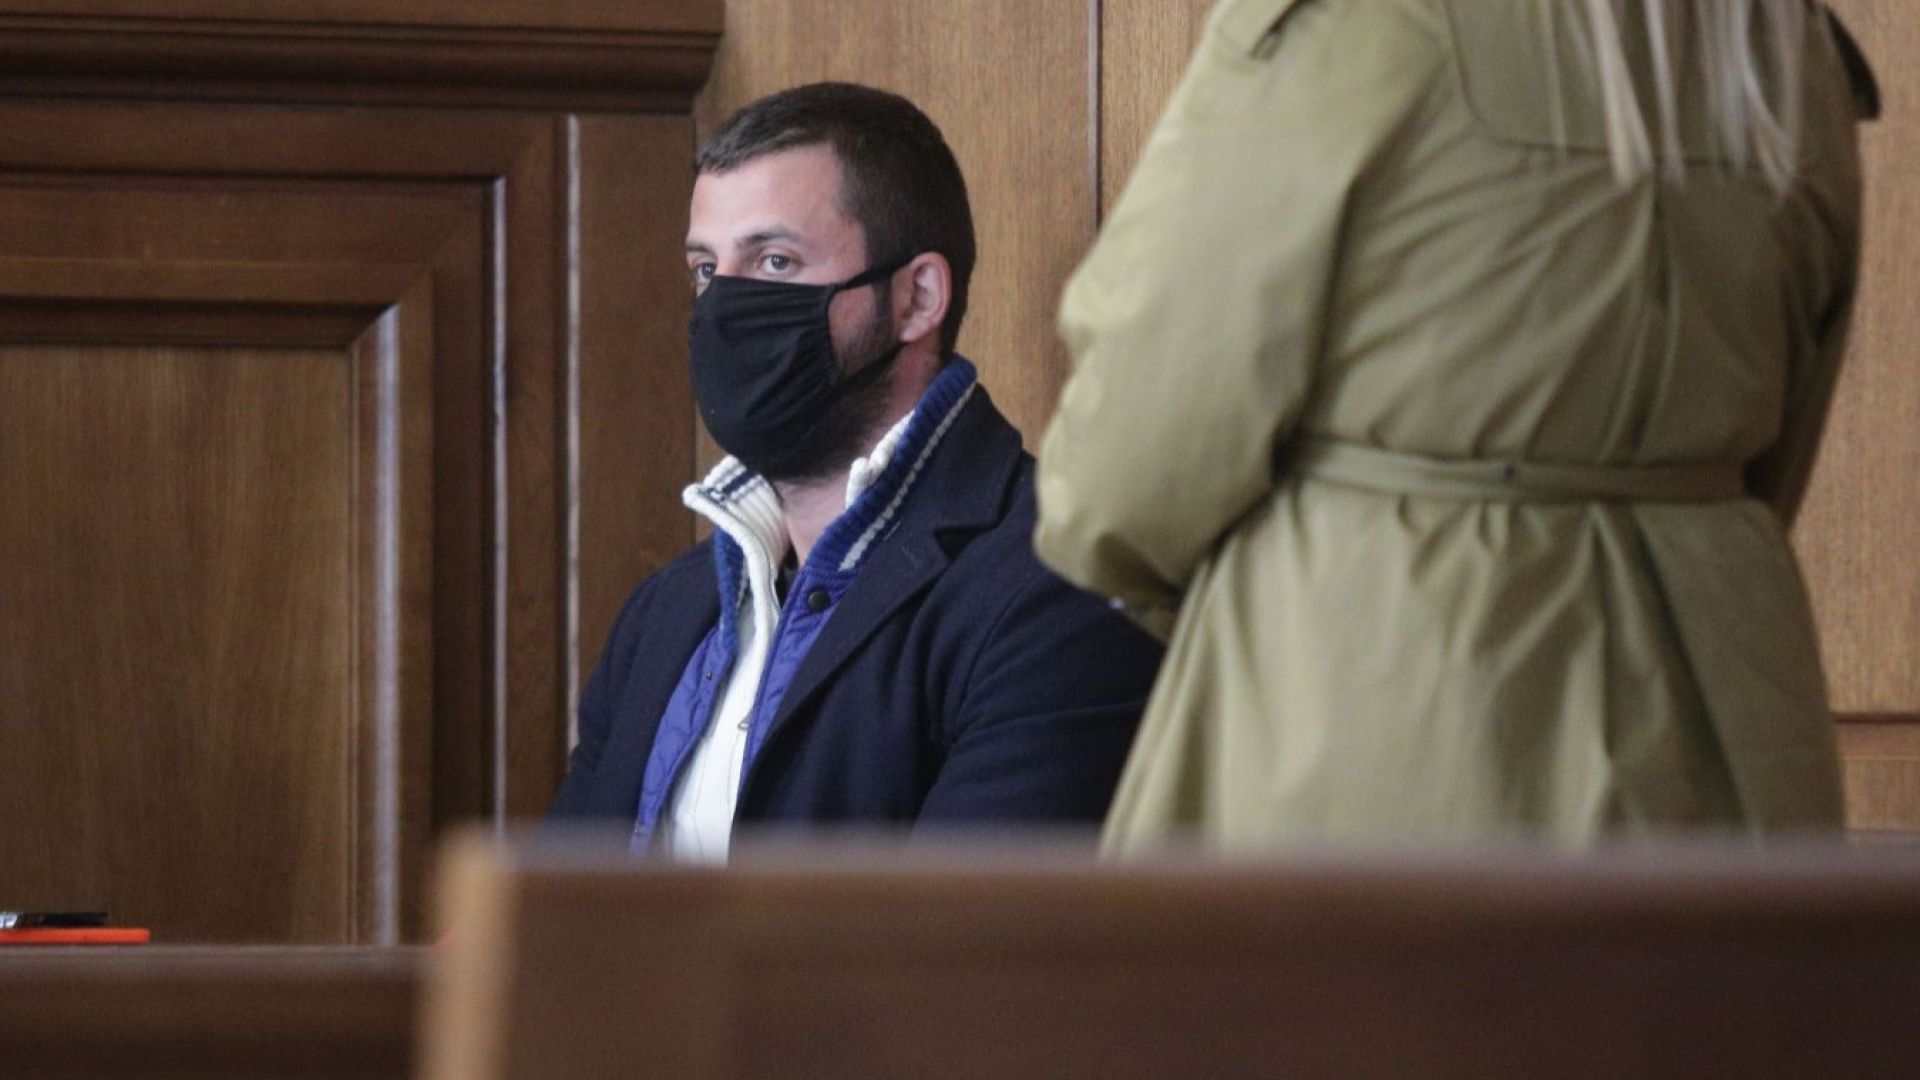 3 от 5 съдии не смятат Йоан Матев за убиец, признанията на брат му не са взети под внимание